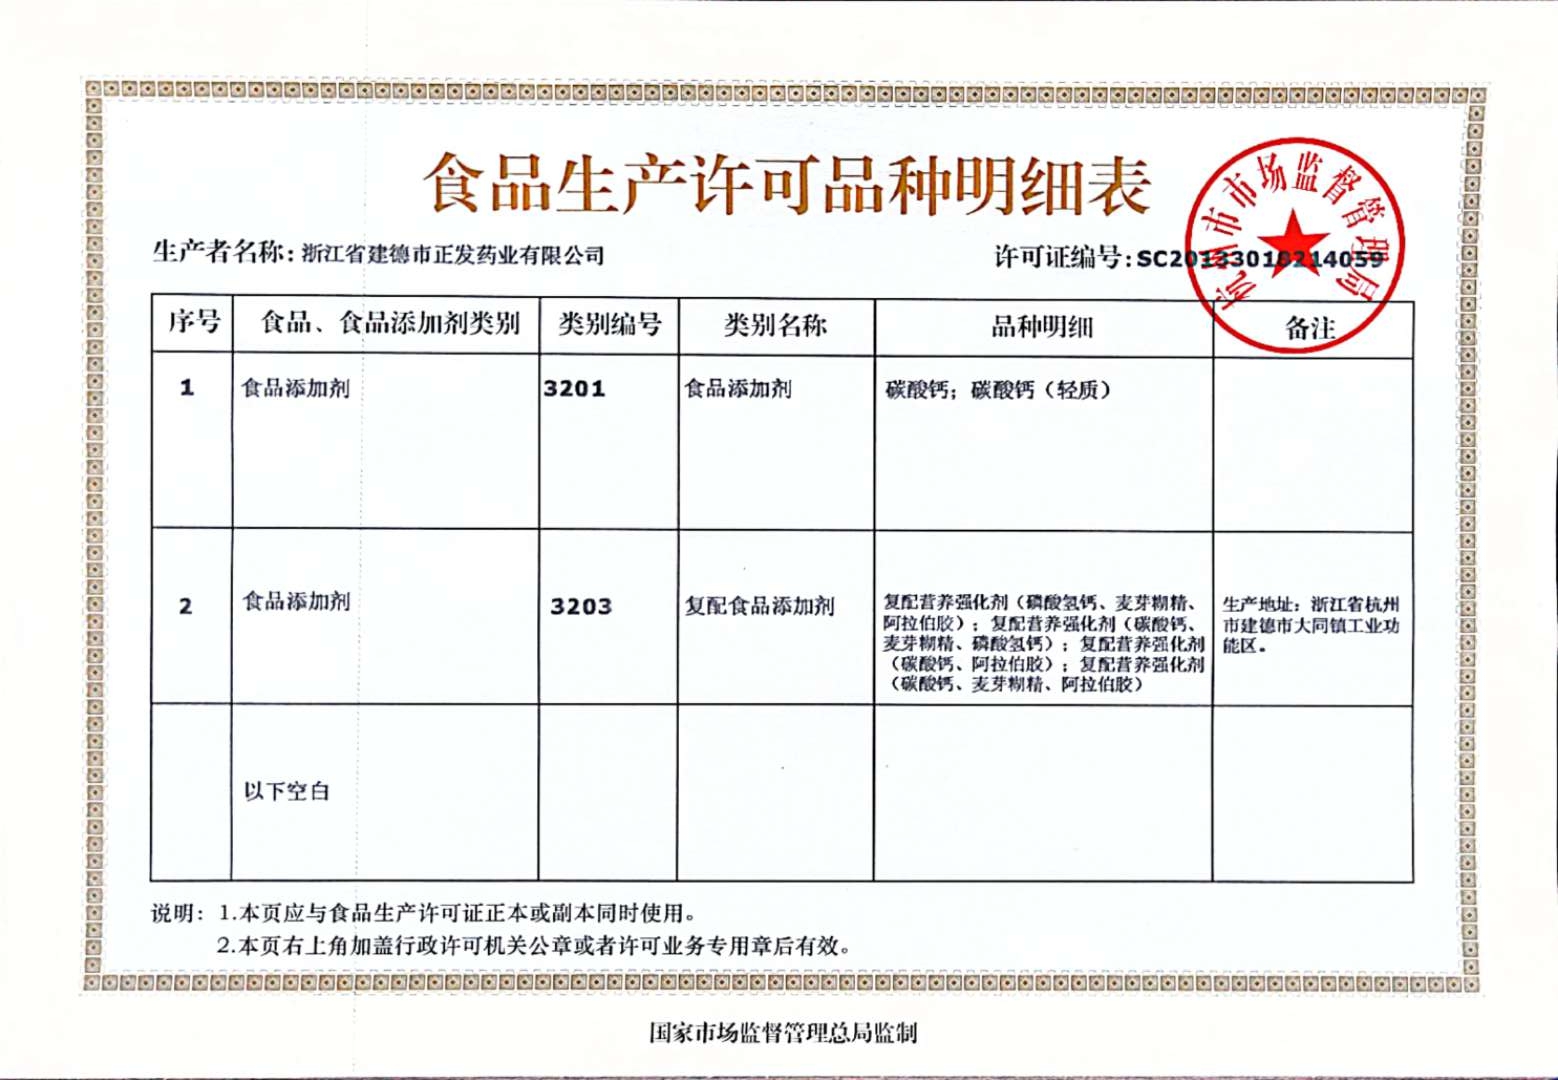 公司一次性通过浙江省药品监督管理局组织的药品GMP符合性的现场核查